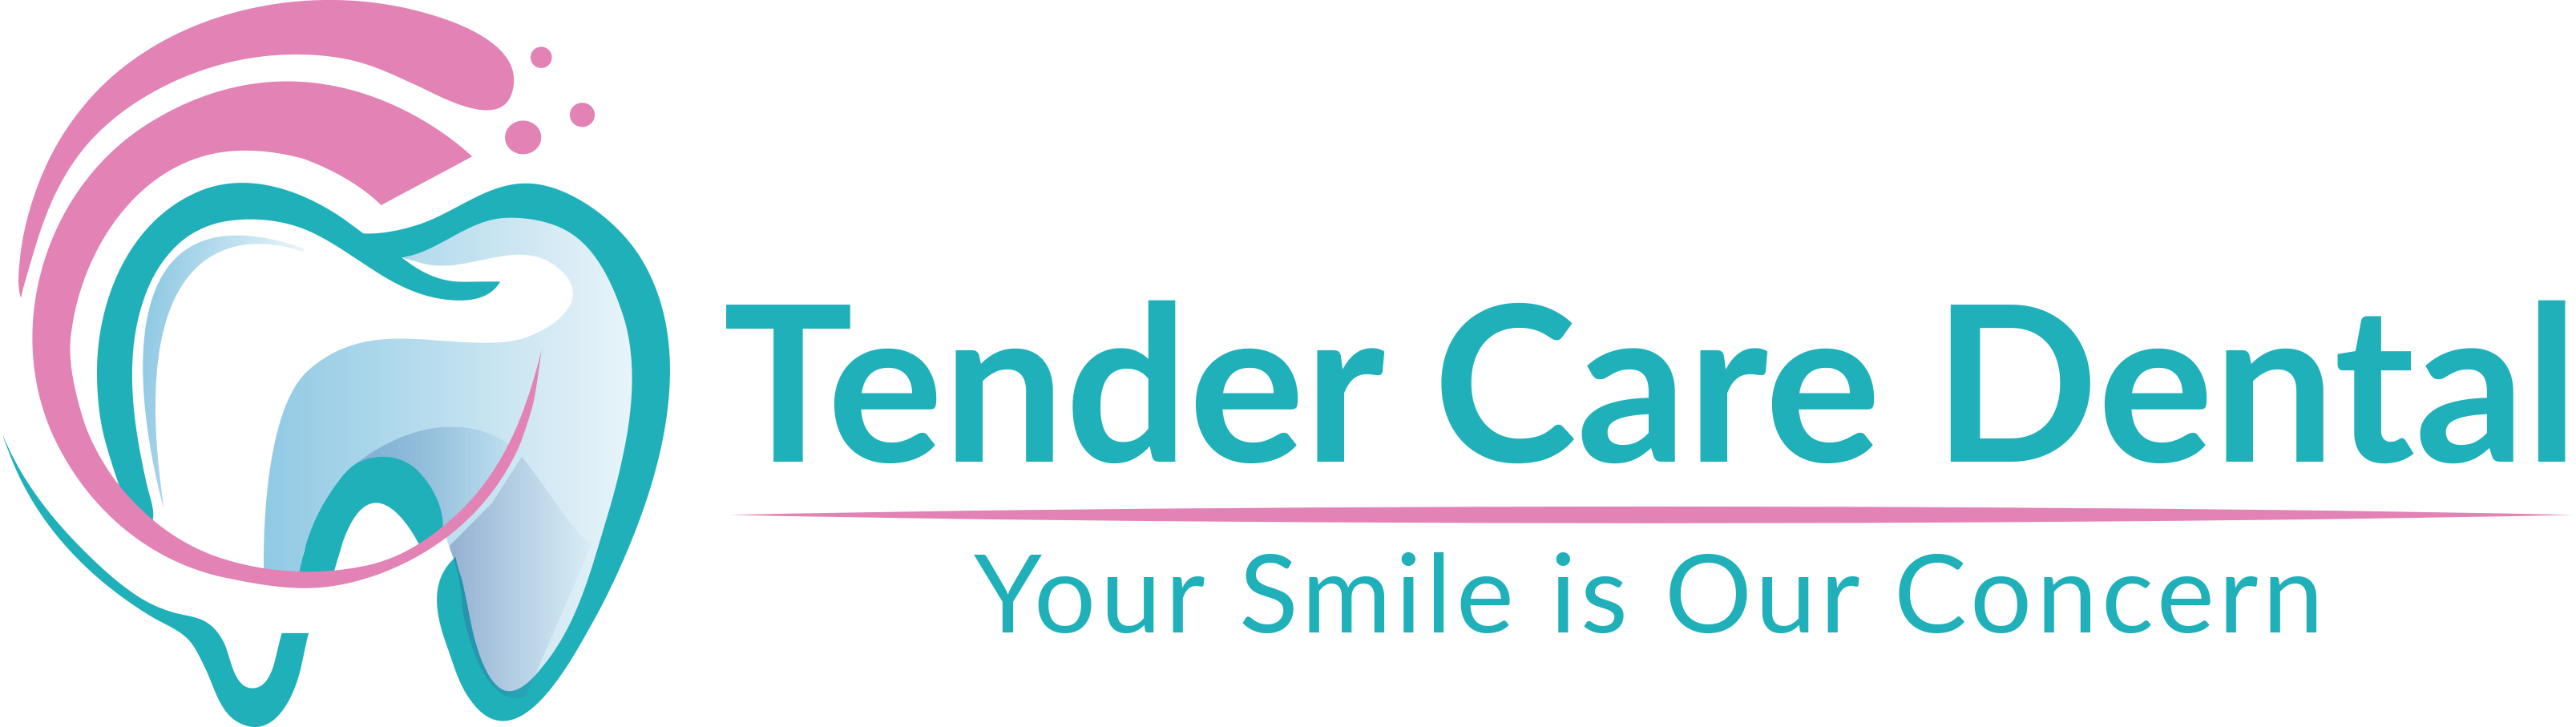 Tender Care Dental